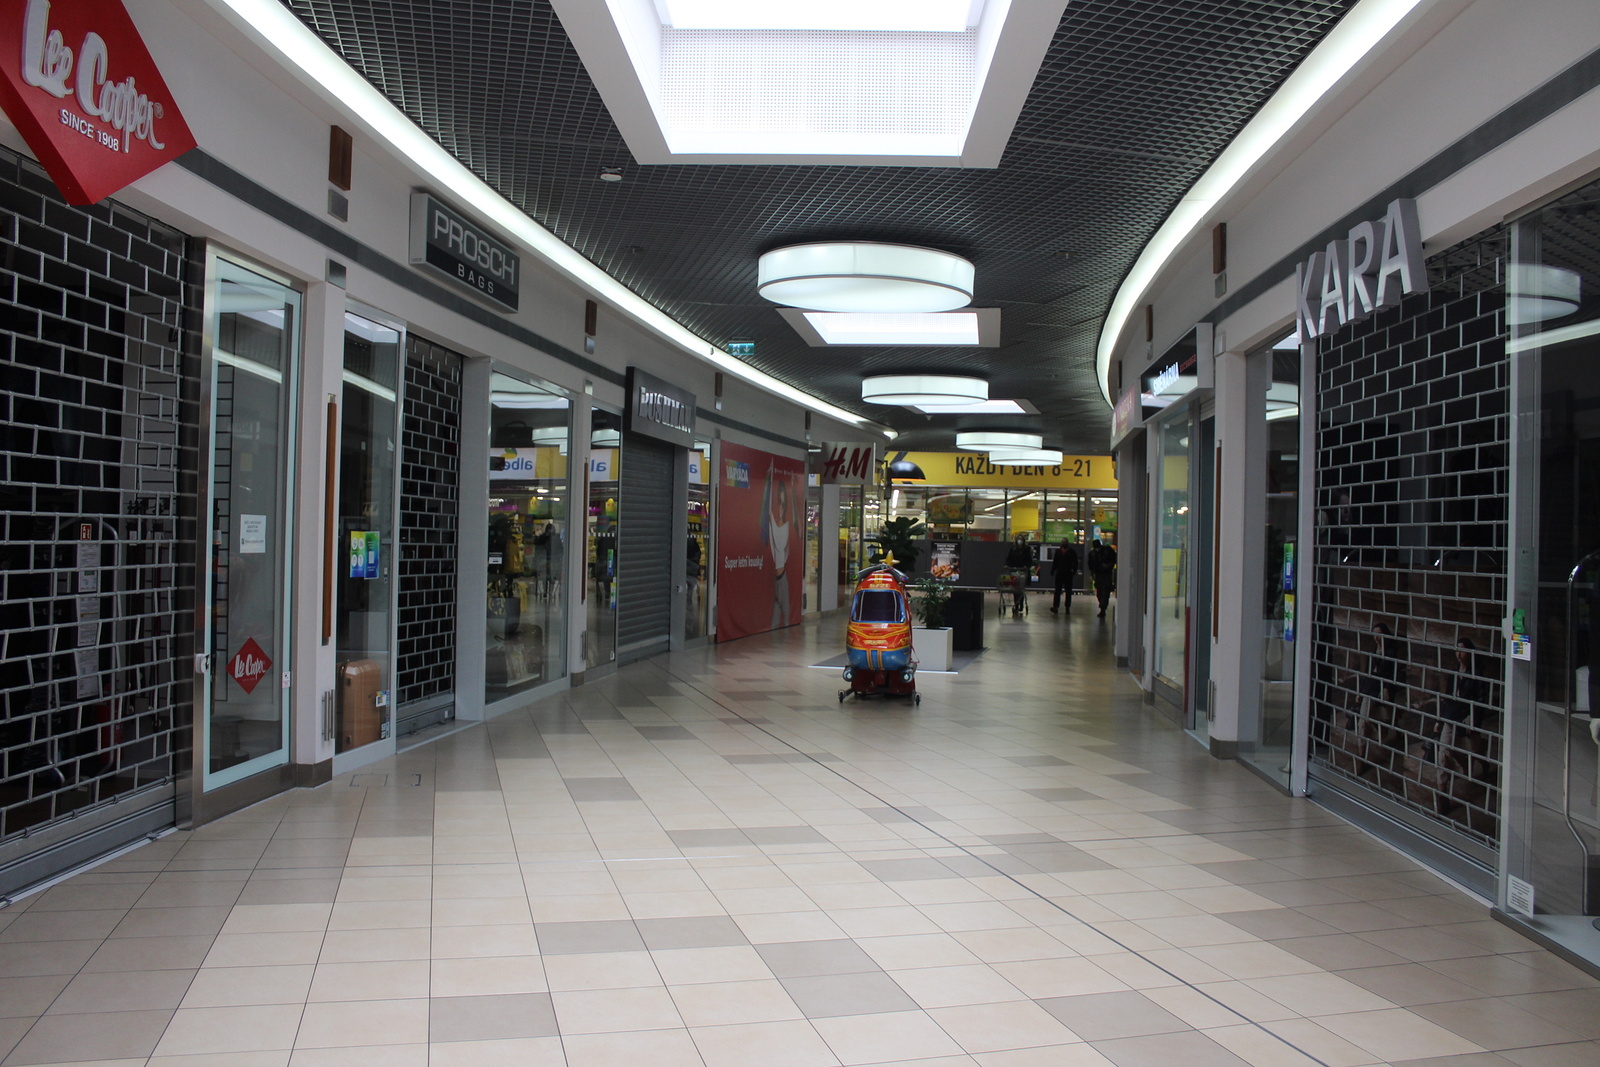 OBRAZEM: Obchody v karlovarských nákupních centrech čekají na zákazníky -  Karlovarský deník